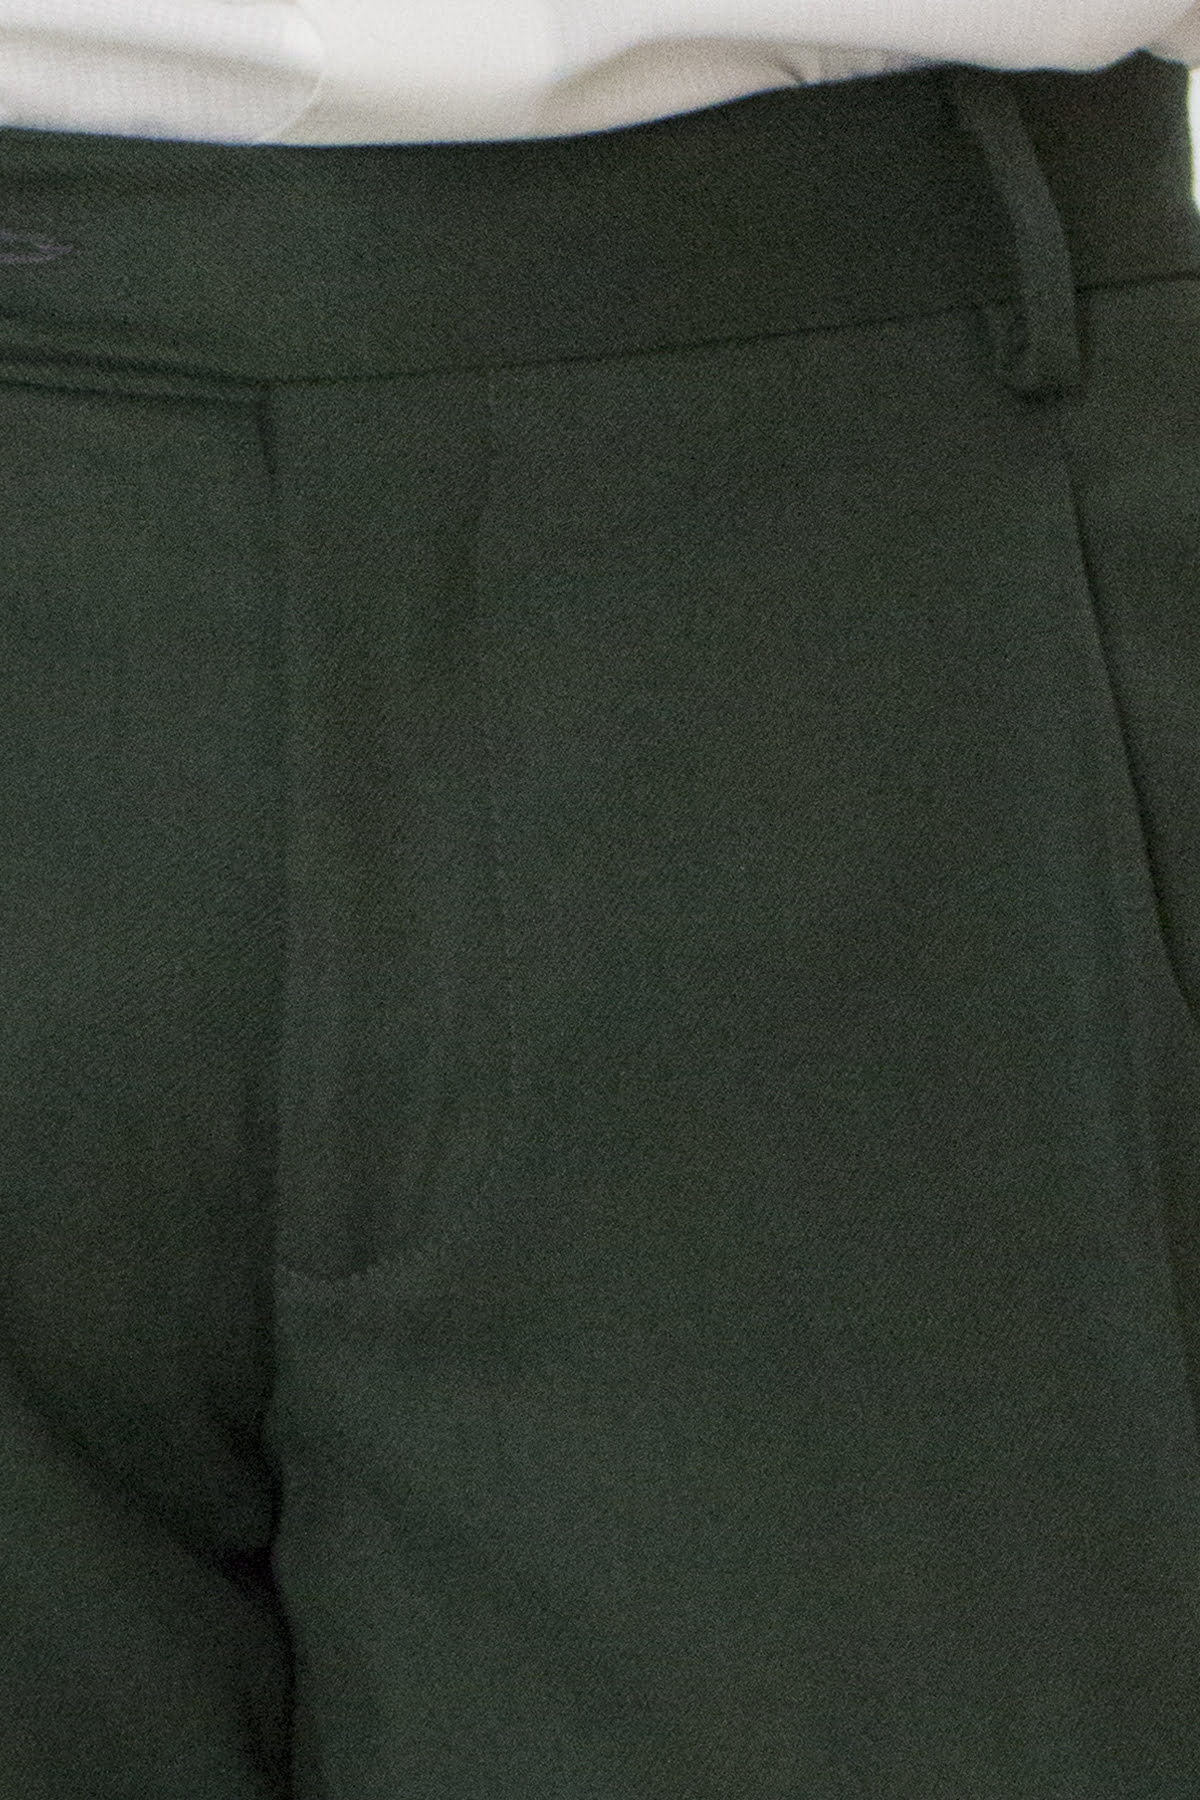 Pantalone uomo militare in lana con doppia pinces e risvolto 4cm